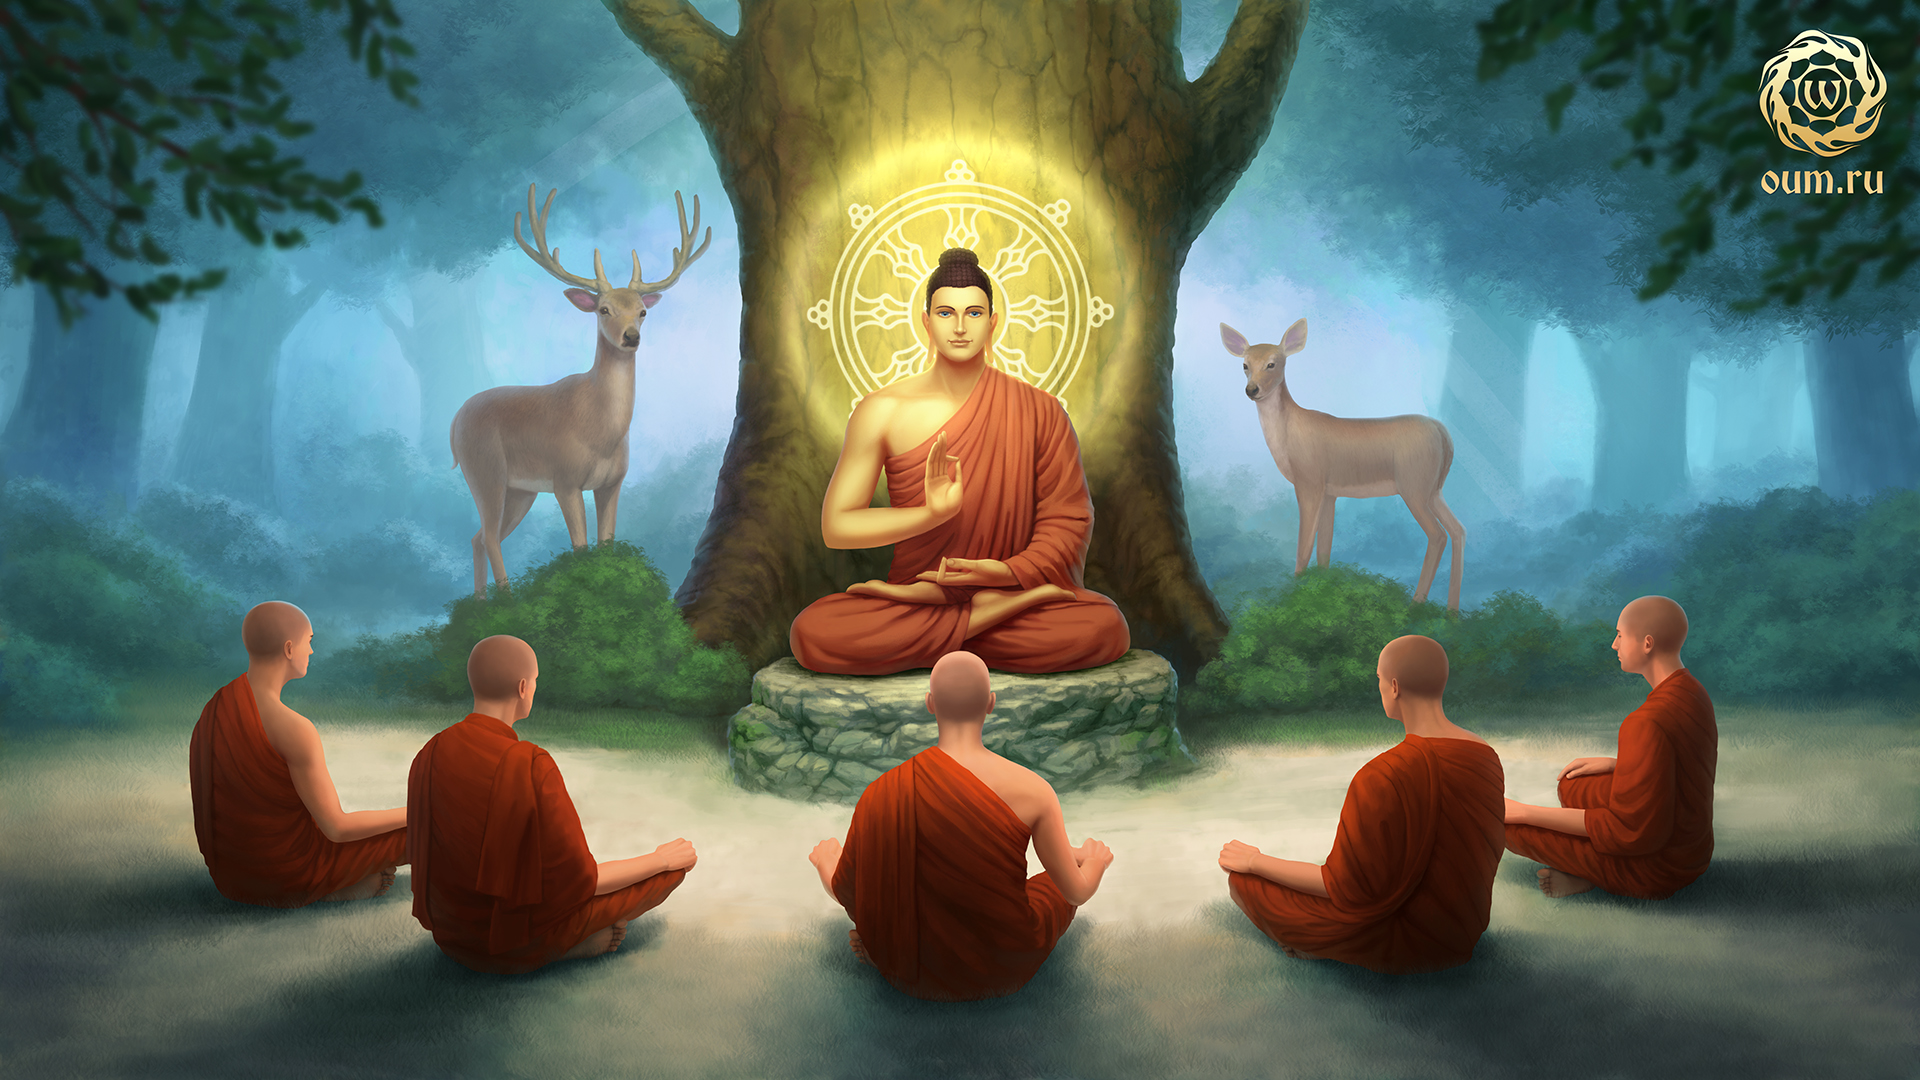 Притча будды. Сиддхартха Гаутама Будда. Будда Сиддхартха Гаутама Шакьямуни. Будда Гаутама Бодхисаттва. Бодхисаттва Будда Шакьямуни Гаутама.